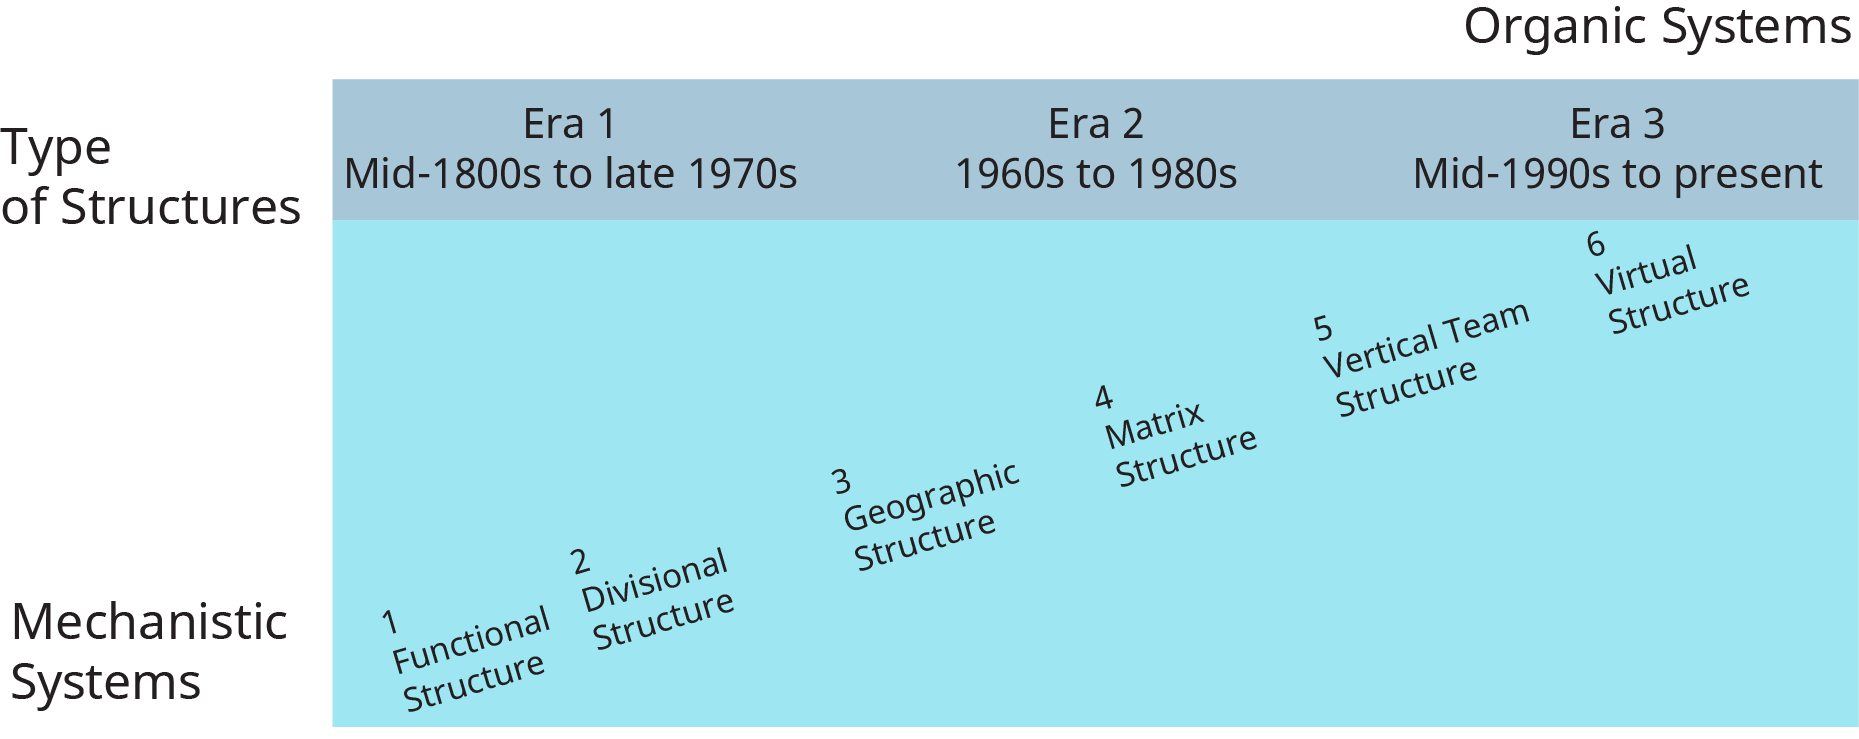 Un diagramme illustre les différentes structures organisationnelles qui ont évolué au fil du temps.